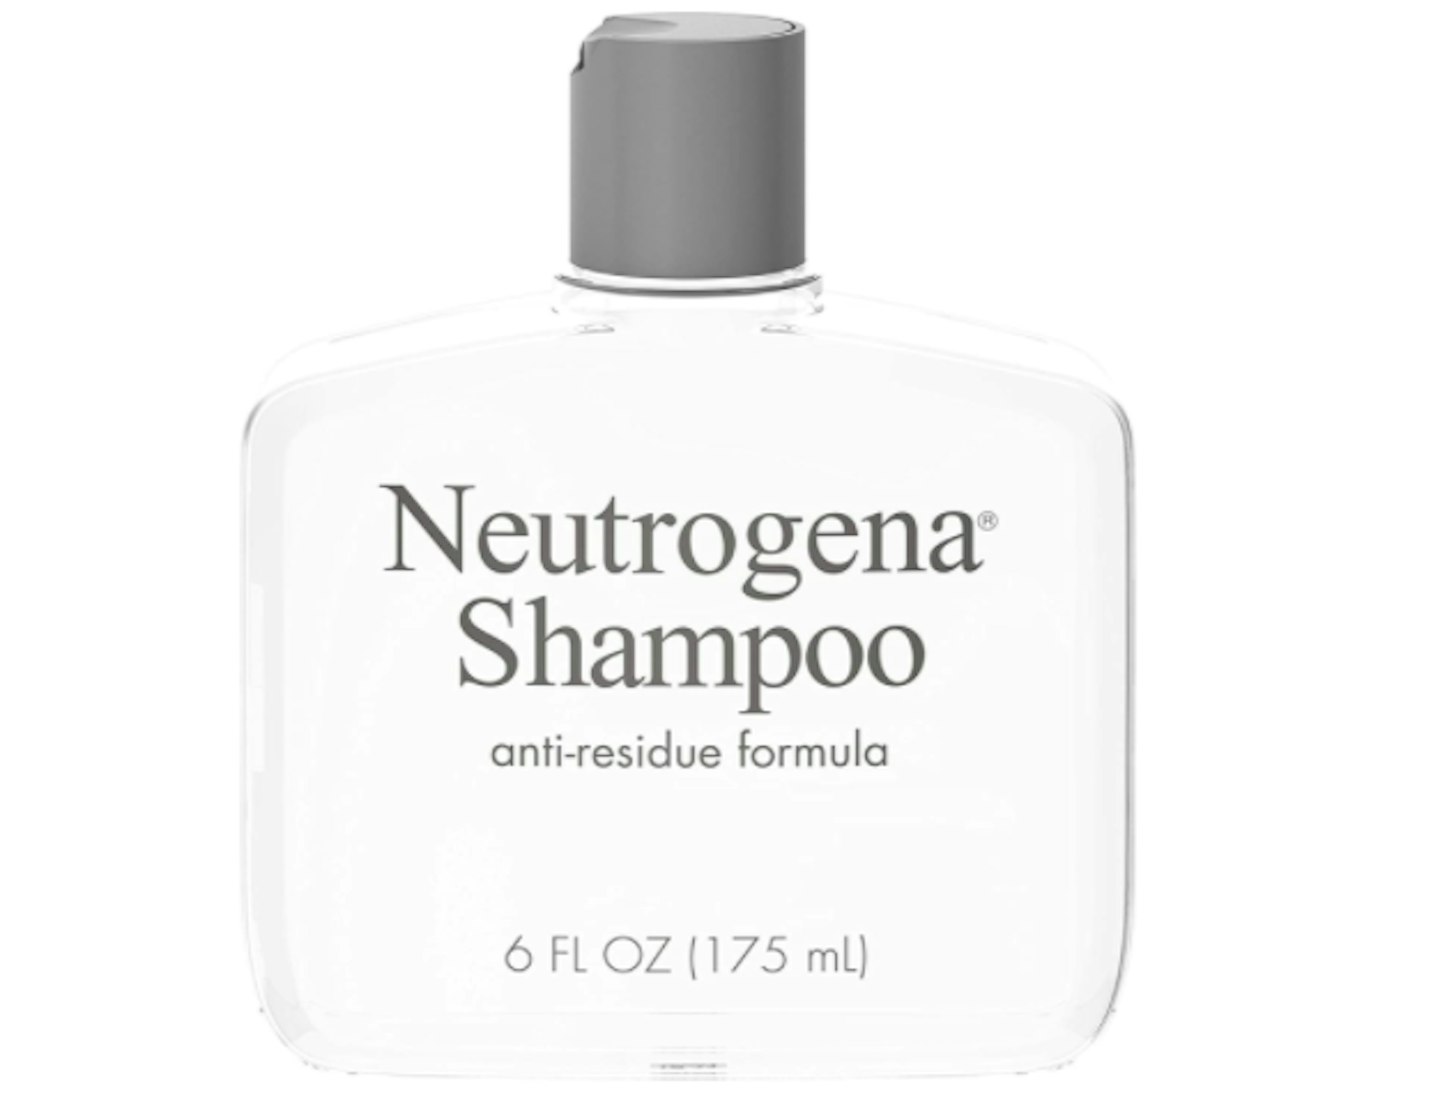 Neutrogena Shampoo Anti- Residue